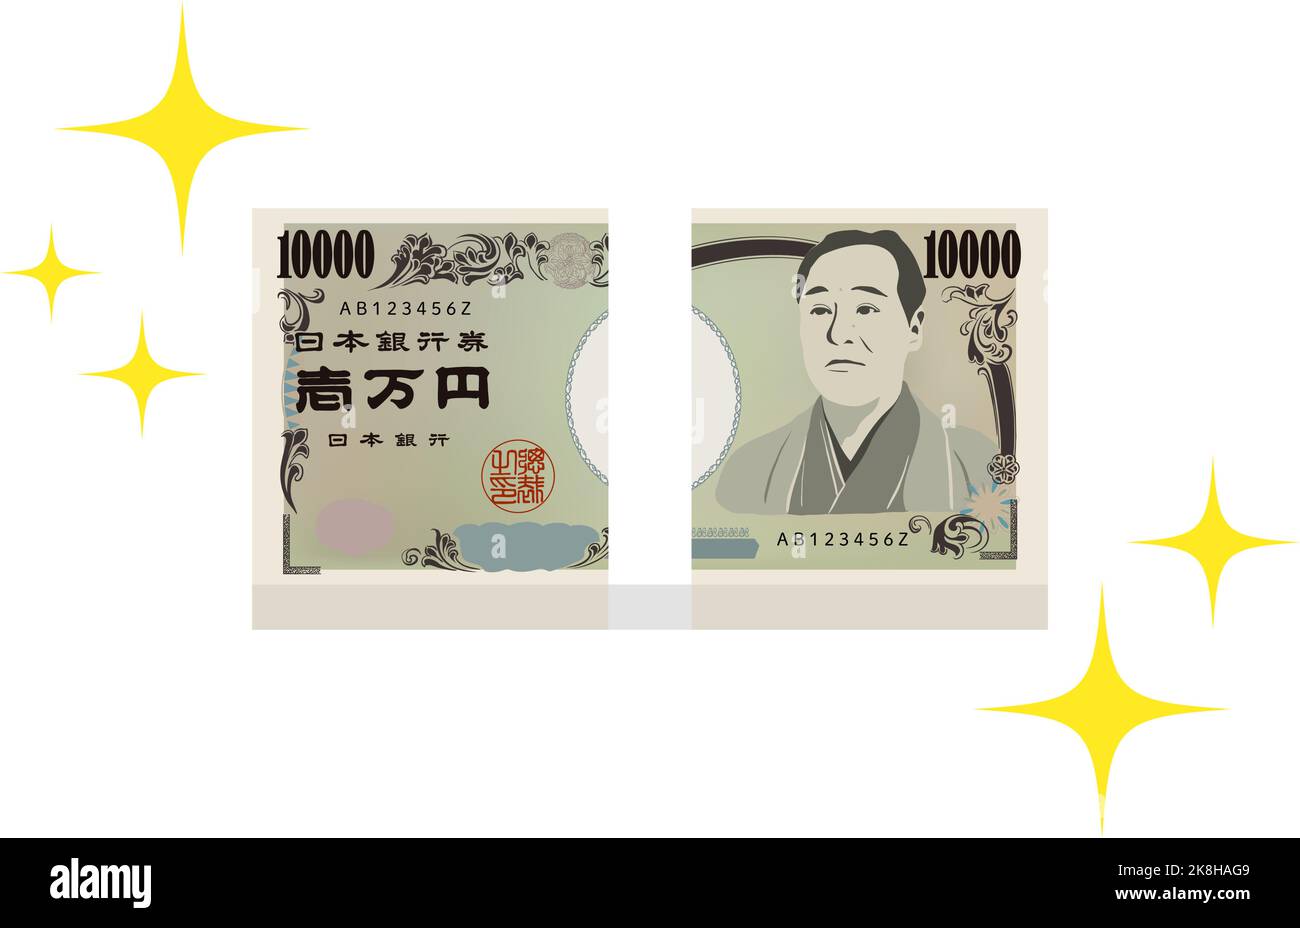 Illustration d'un wad d'un million de yens Traduction: Billets de la Banque du Japon, Ichiman yen, Banque du Japon Illustration de Vecteur